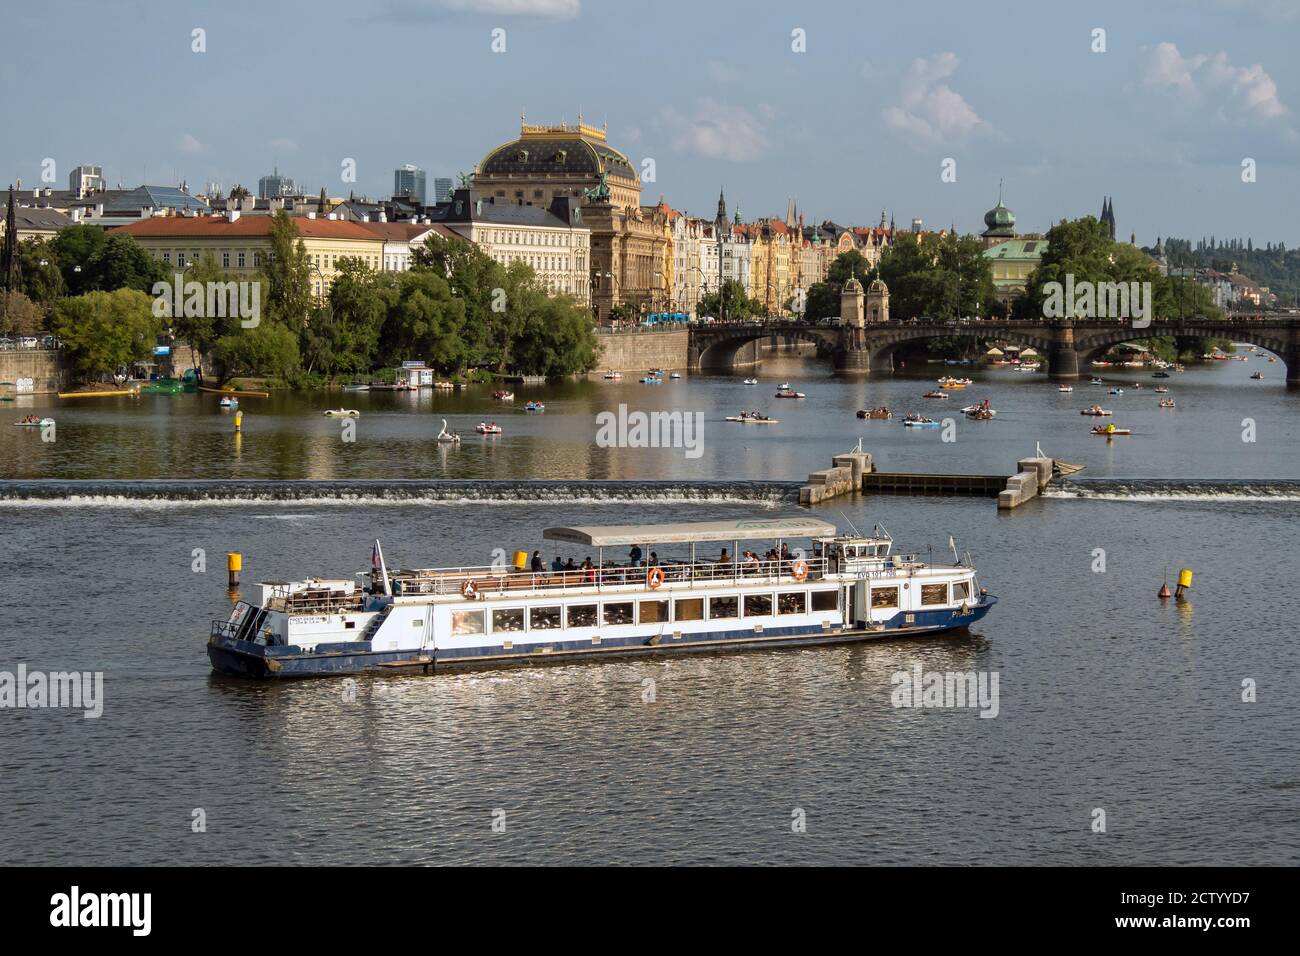 PRAGA, REPUBBLICA CECA: Giro turistico in barca sul fiume Moldava con il Ponte della Legione e il Teatro Nazionale a cupola (Narodni divadlo) sullo sfondo Foto Stock